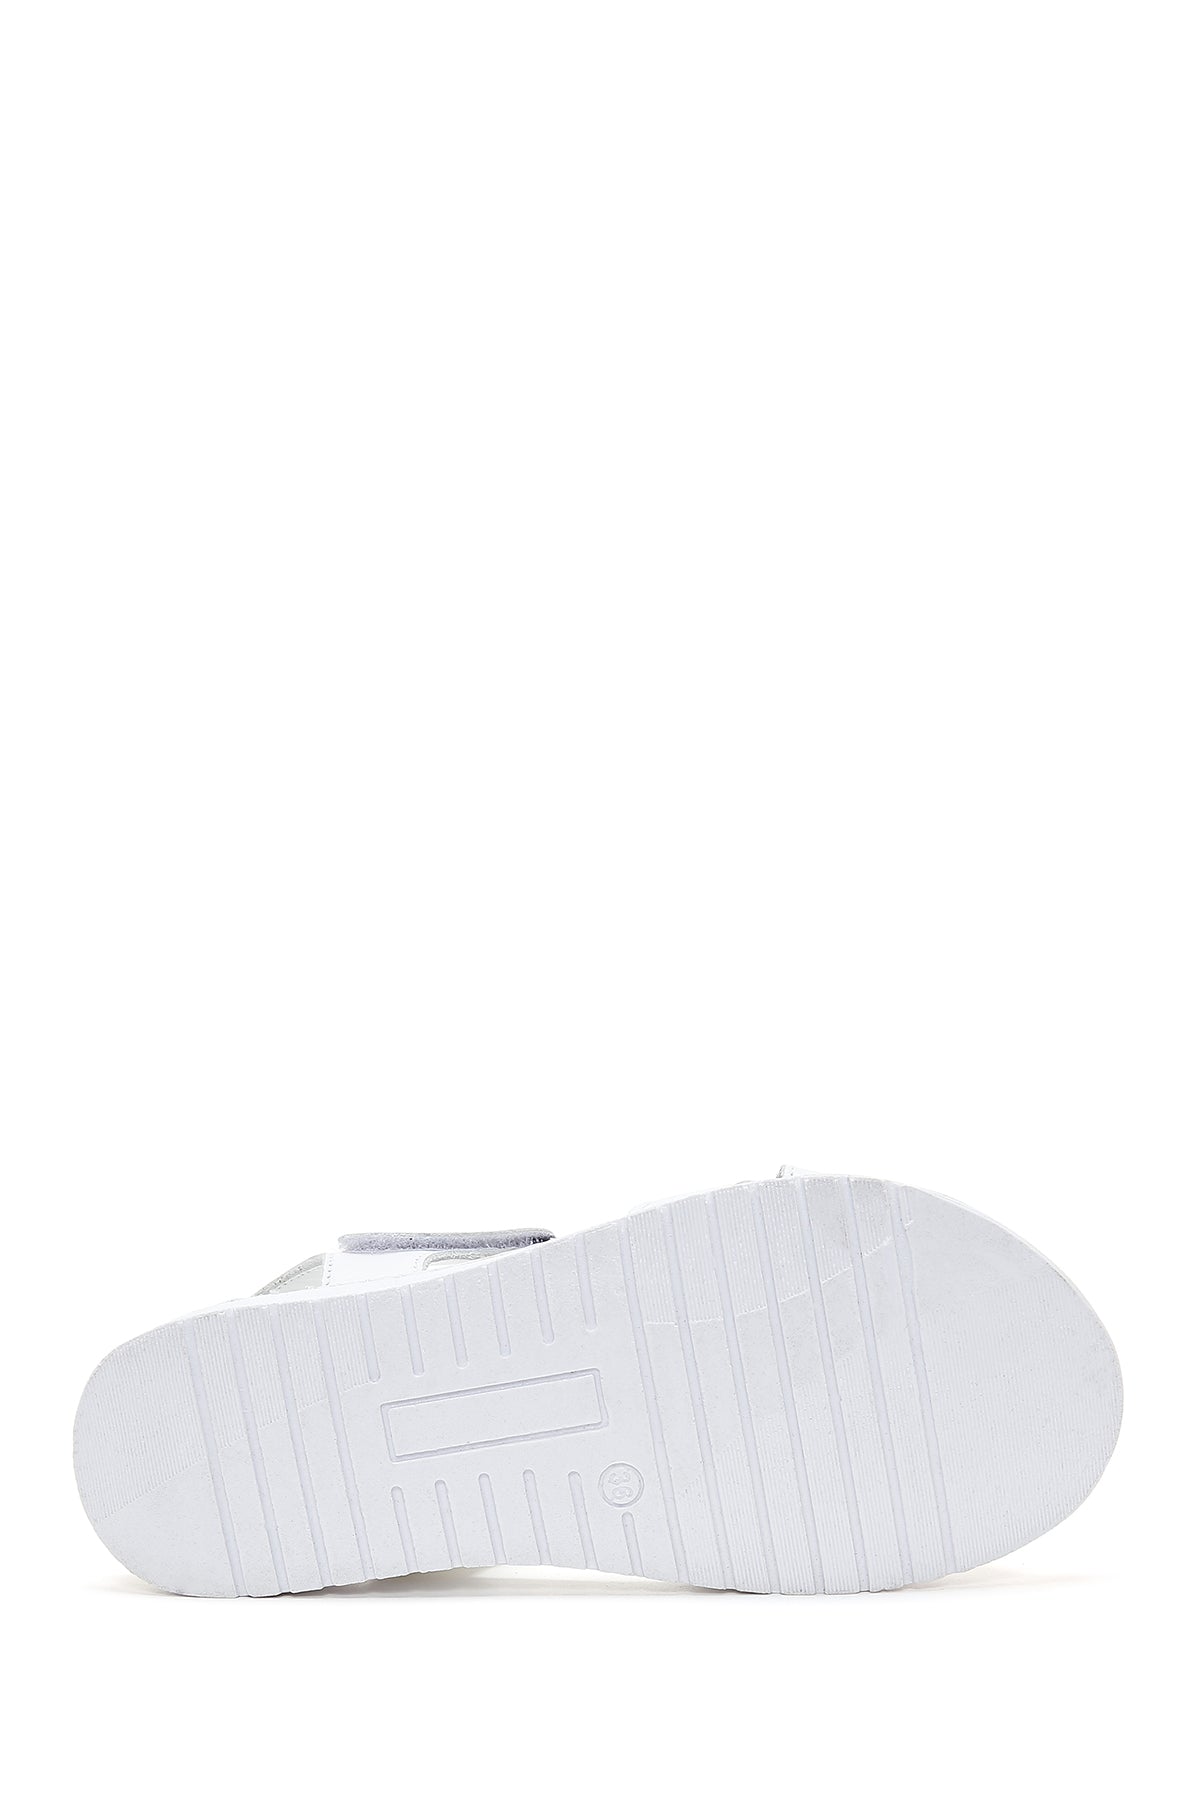 Kadın Beyaz Deri Comfort Sandalet